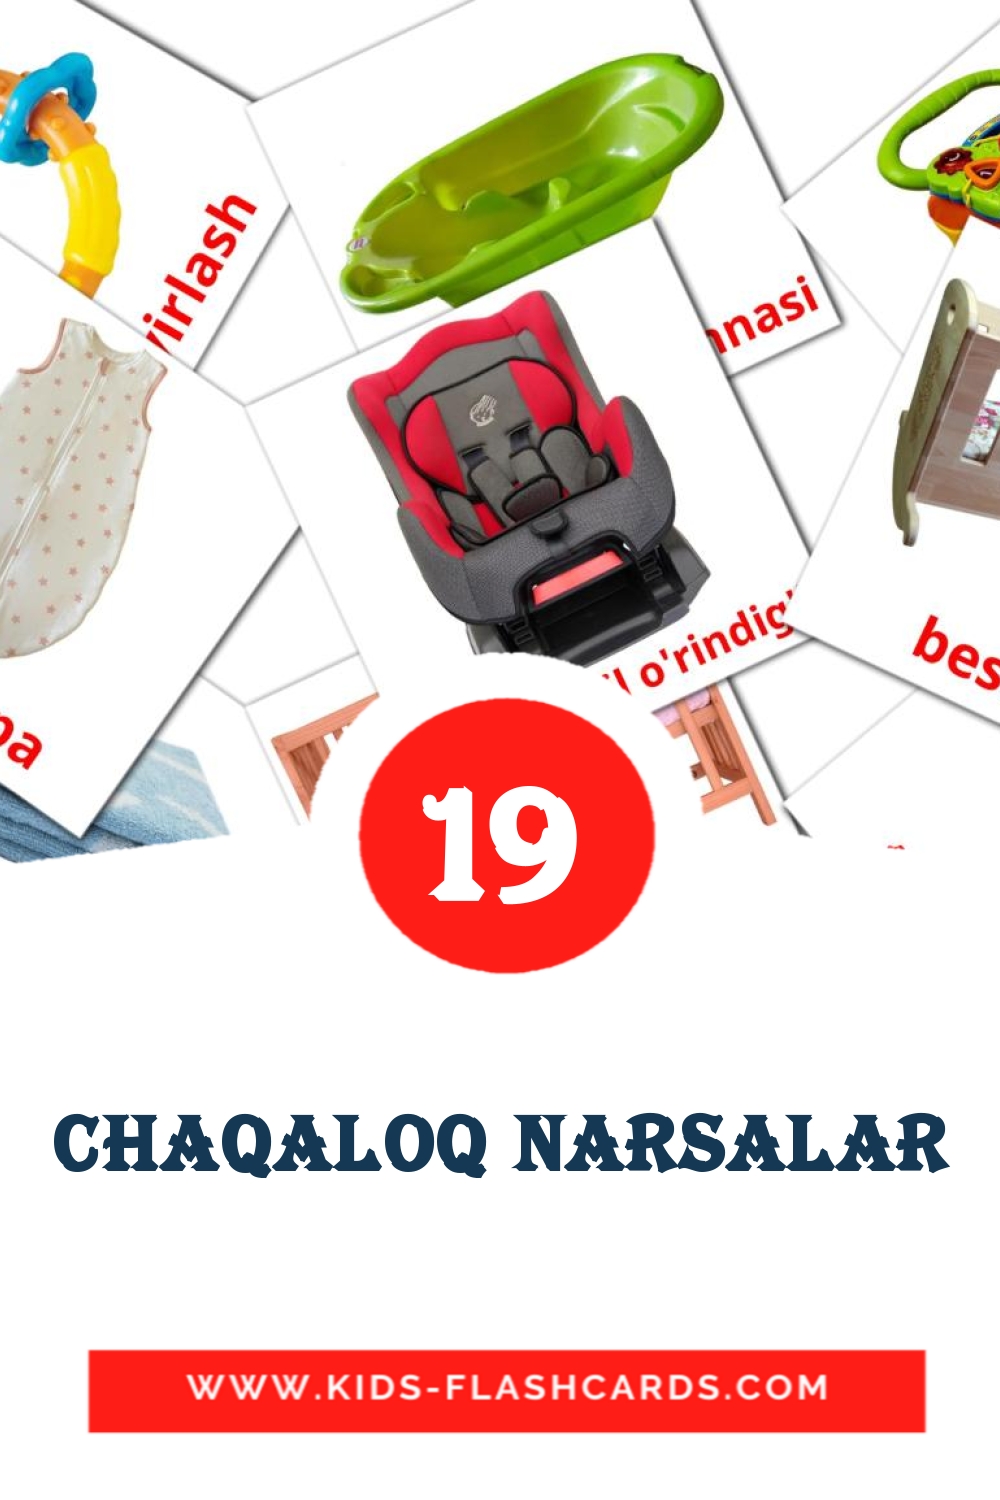 19 Chaqaloq narsalar fotokaarten voor kleuters in het uzbeekse